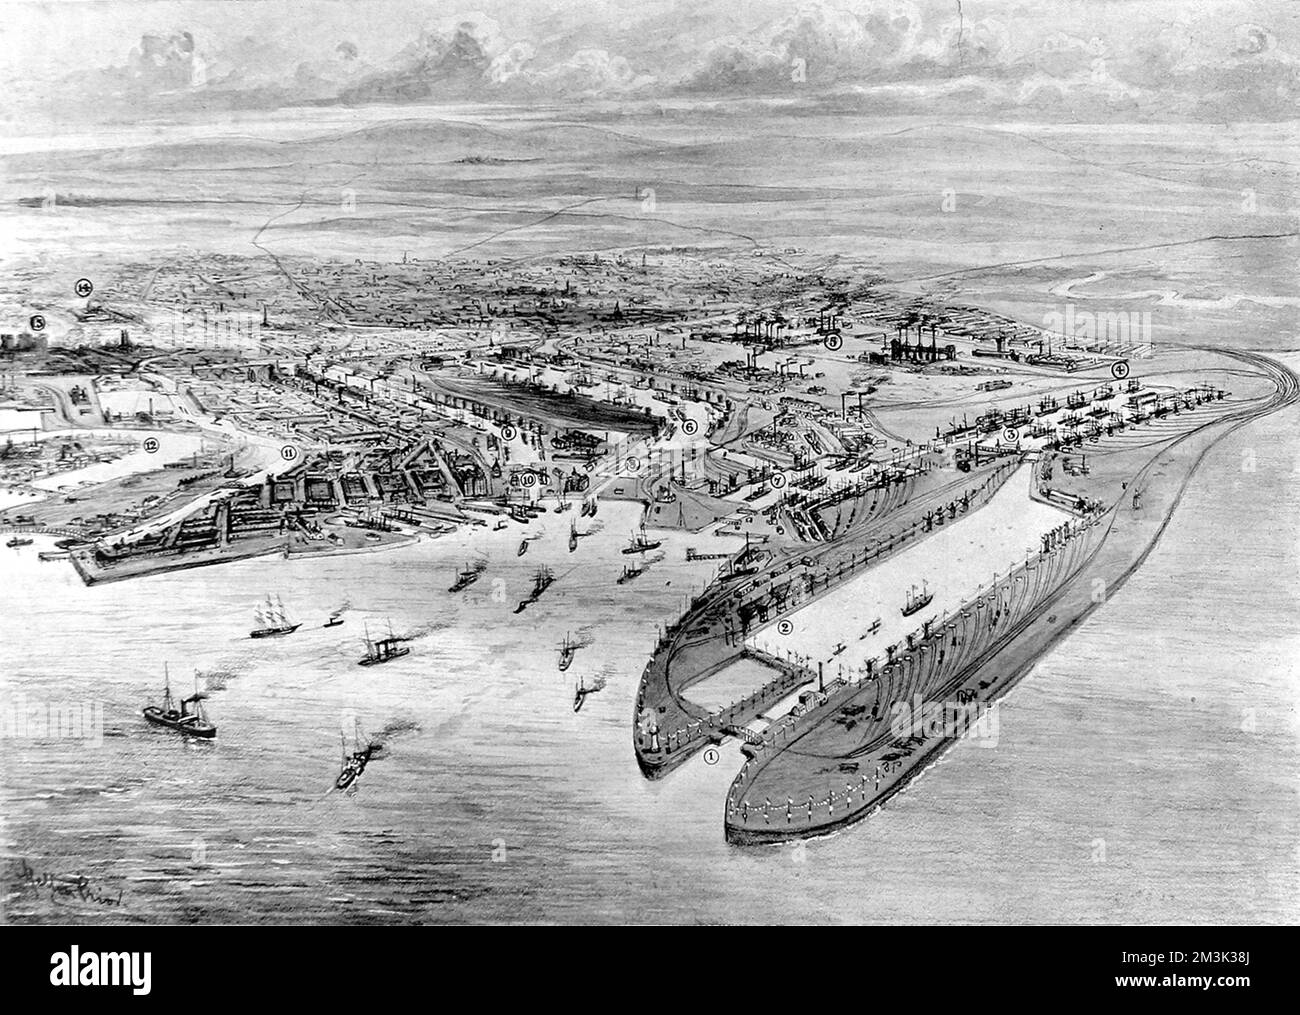 Vista aerea dei moli di Cardiff, Galles del Sud, con l'allora recentemente aperto Queen Alexandra Dock (centro a destra). Data: 1907 Foto Stock